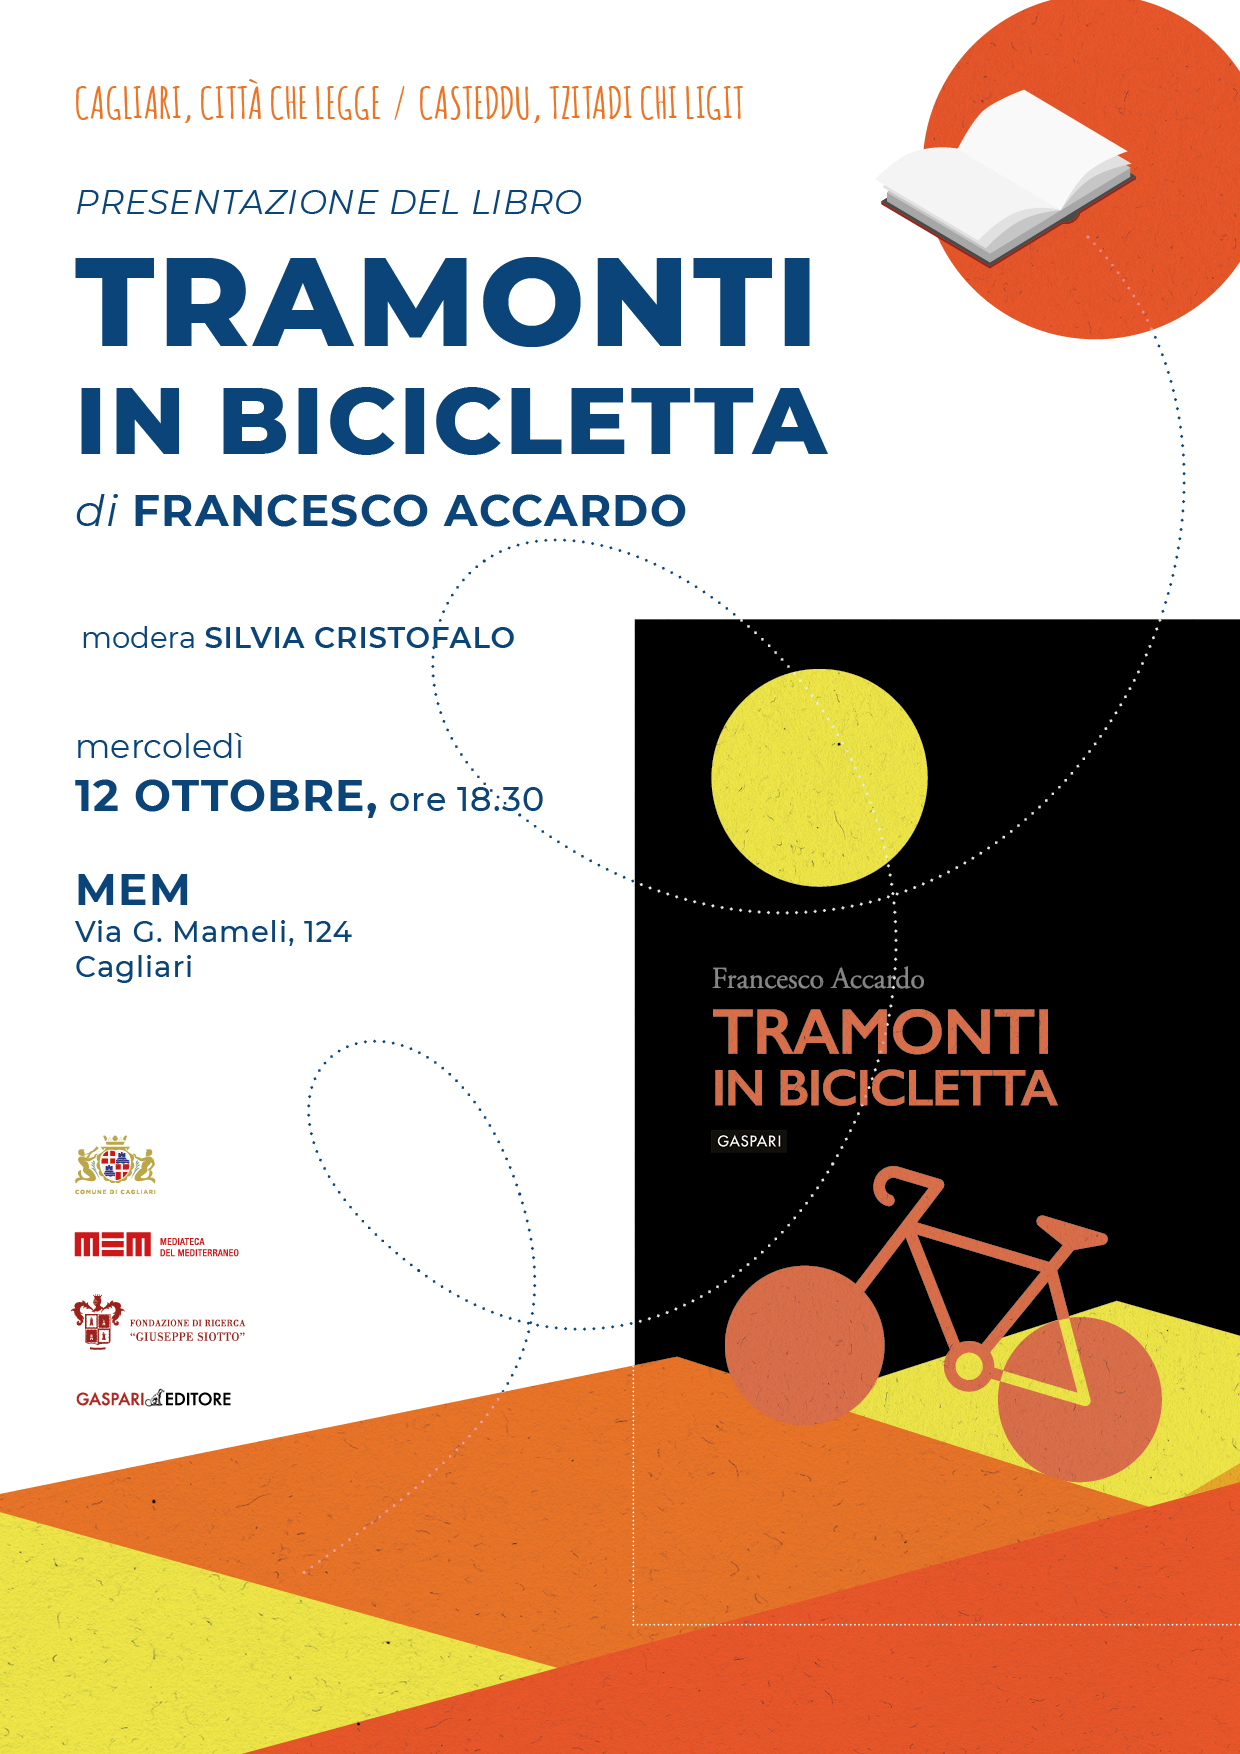 Al momento stai visualizzando Presentazione del libro “Tramonti in bicicletta” – Francesco Accardo